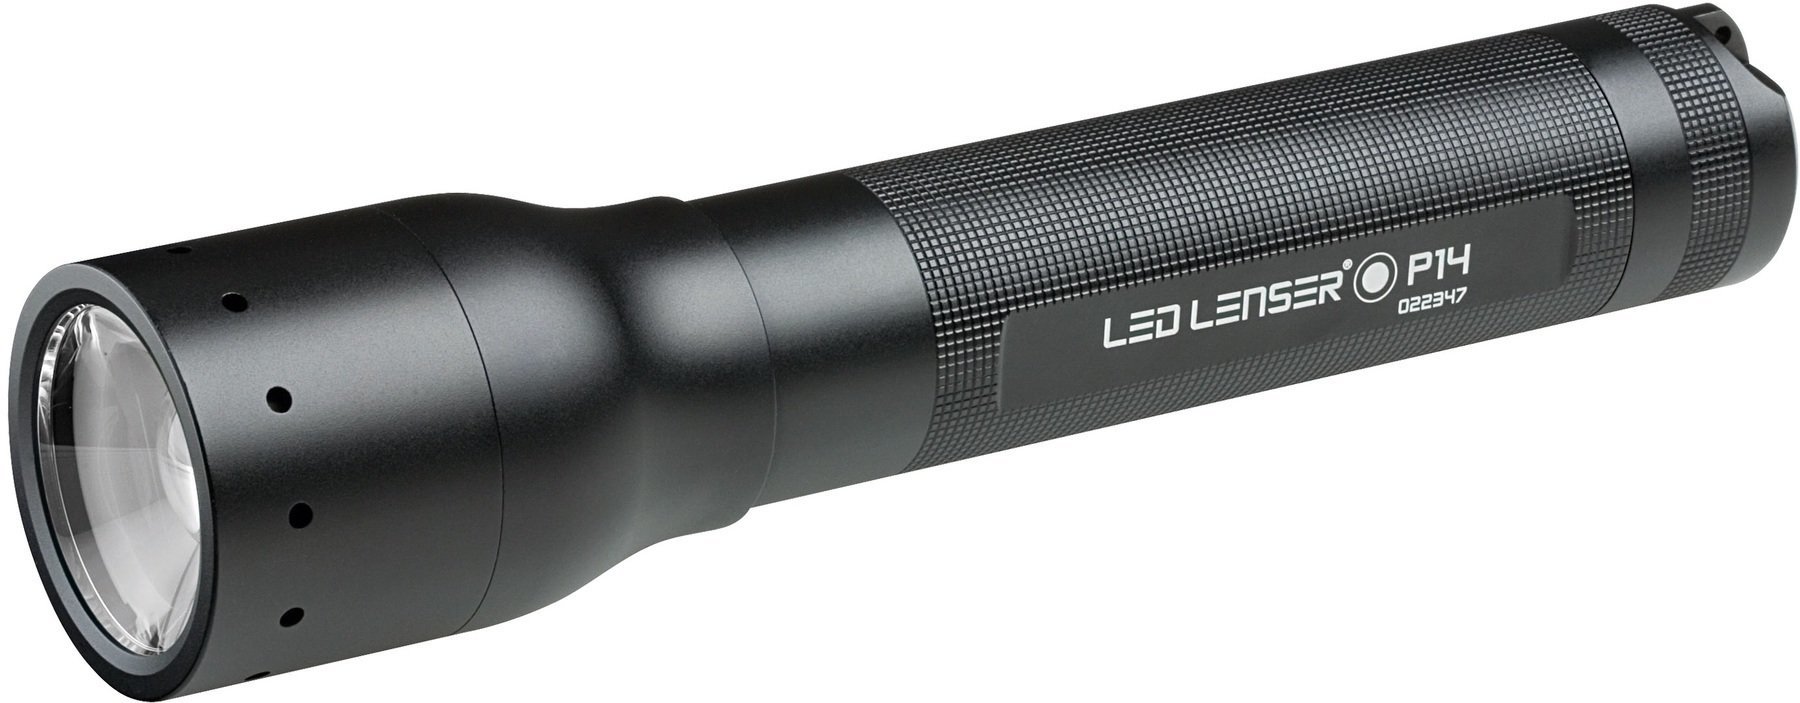 Taschenlampe Led Lenser P14 Taschenlampe